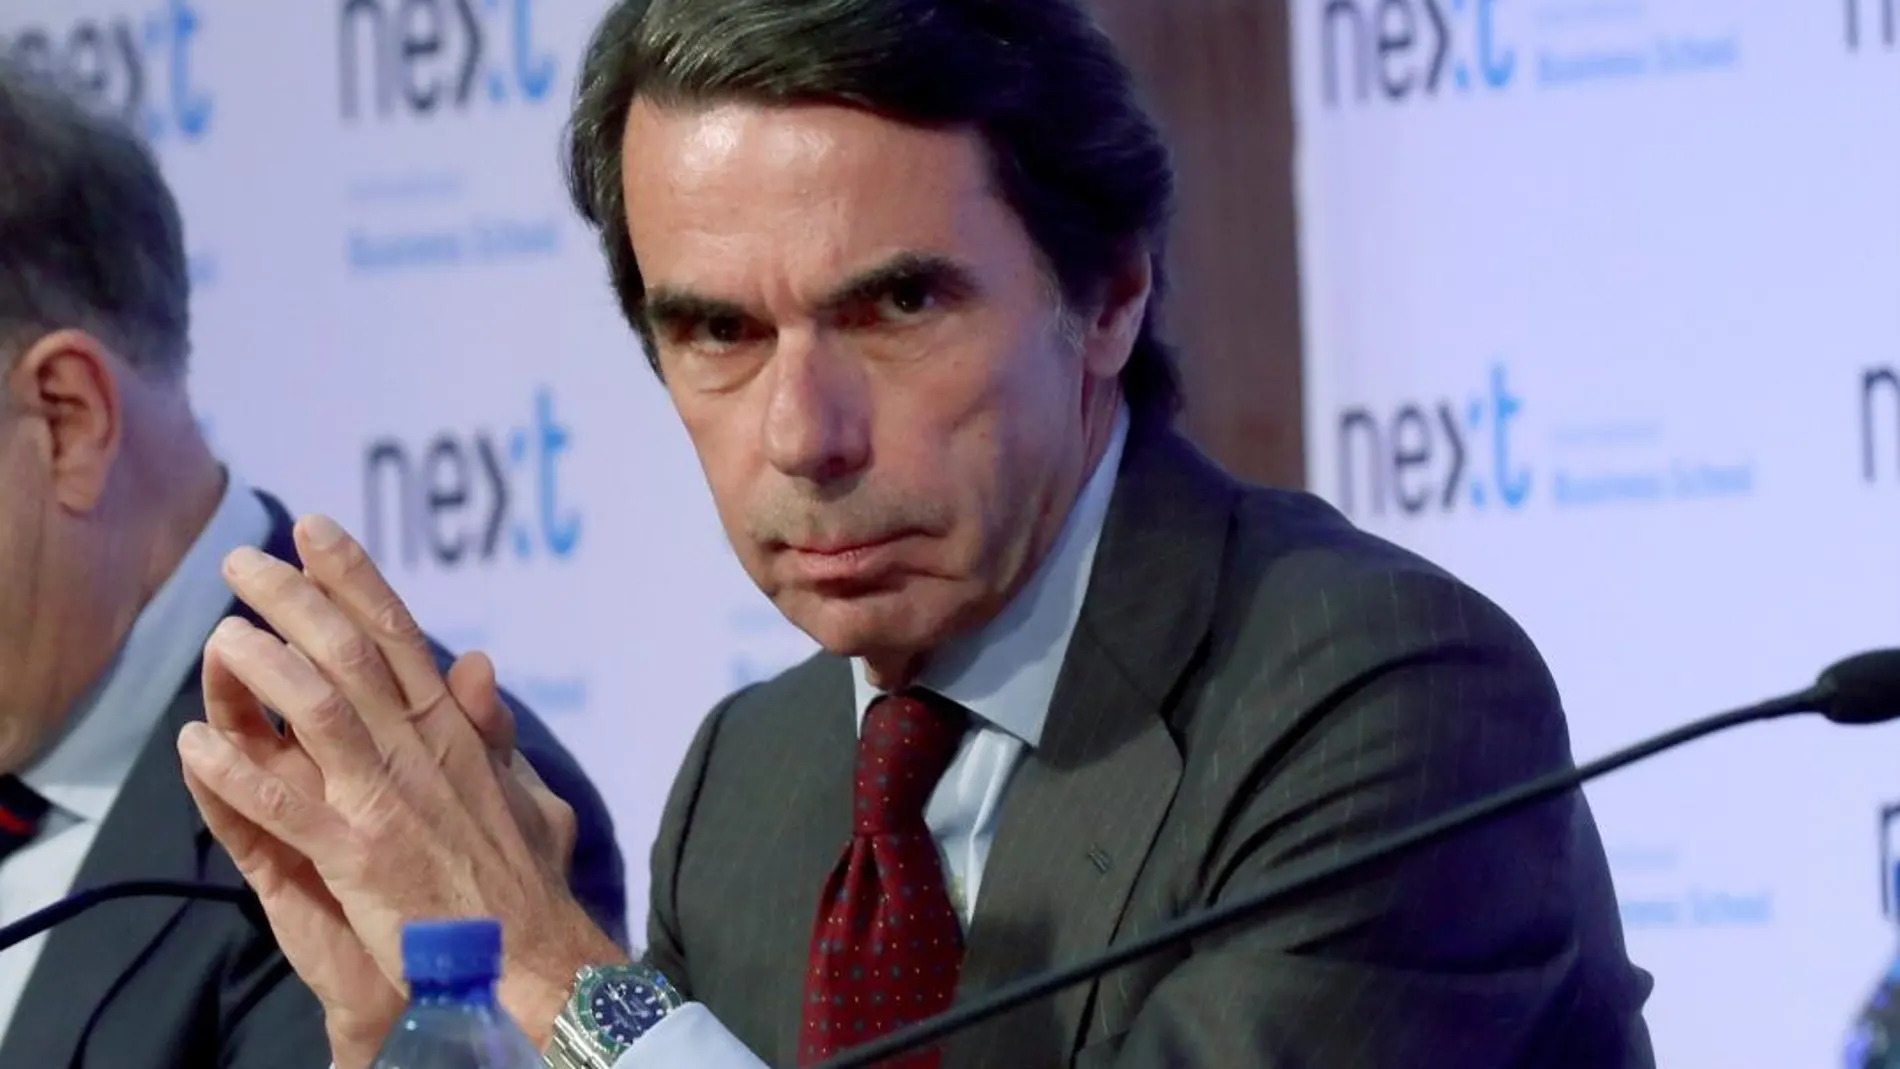 El expresidente del Gobierno José María Aznar, durante la presentación del libro "No hay ala oeste en la Moncloa"/ Foto: Efe